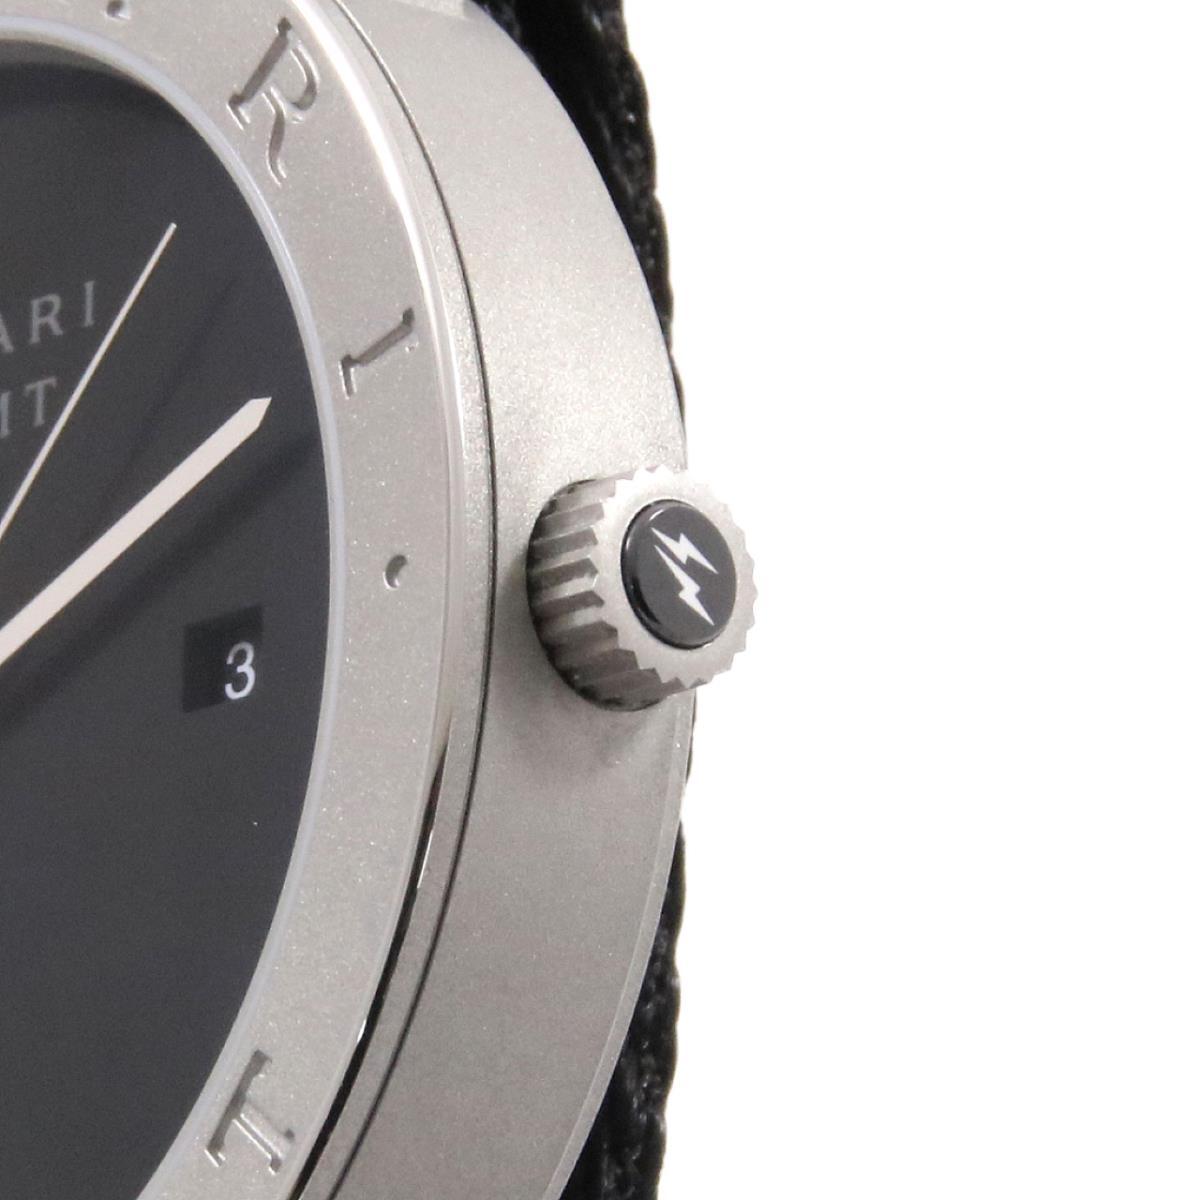 SALE 日本限定250本 未使用品BVLGARI ブルガリ  ブルガリブルガリ フラグメント  BB41S 103443  メンズ 腕時計